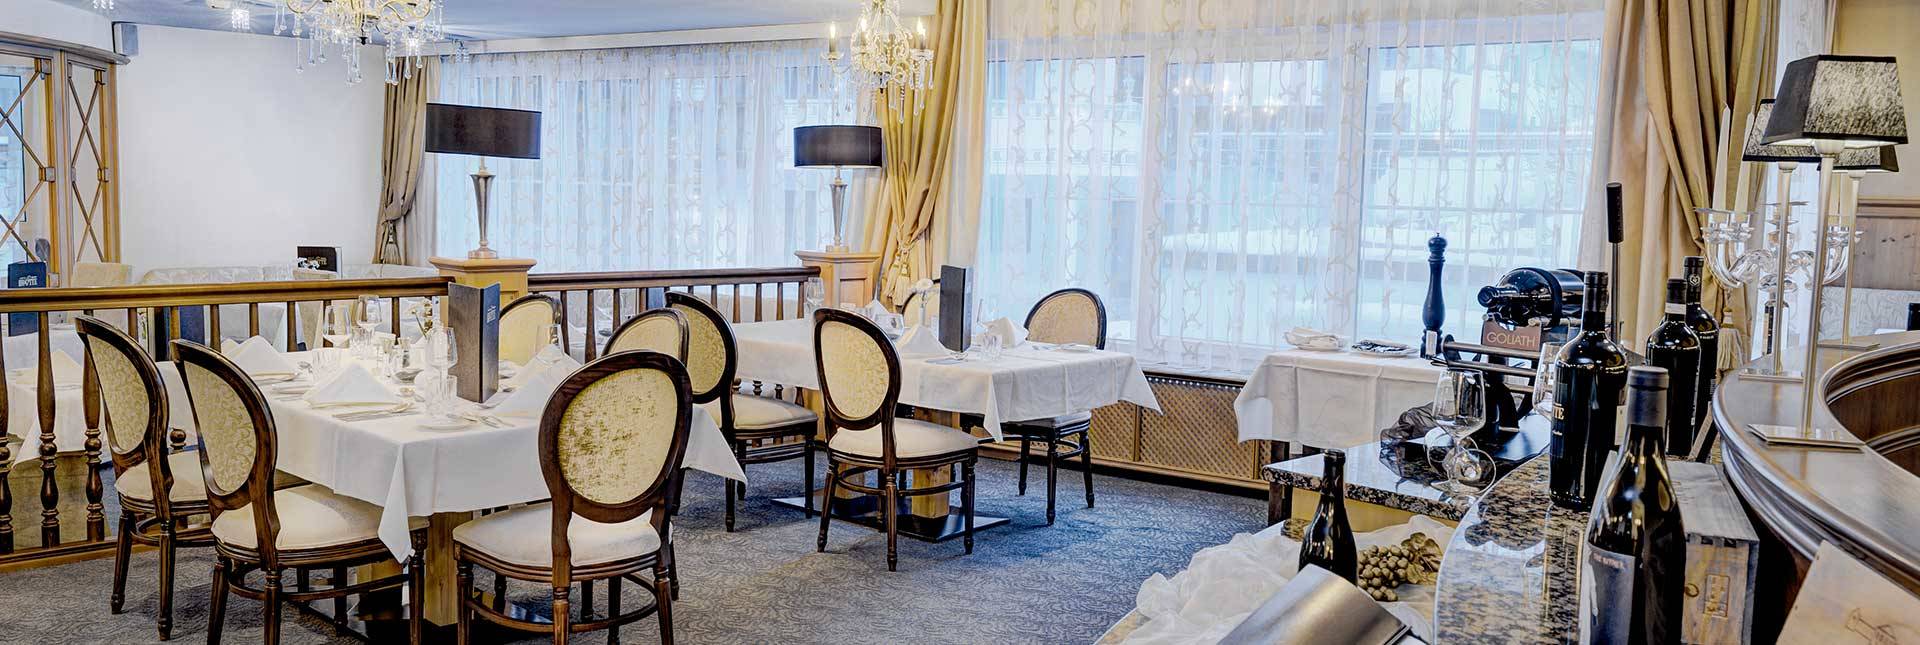 Dining room Hotel Brigitte